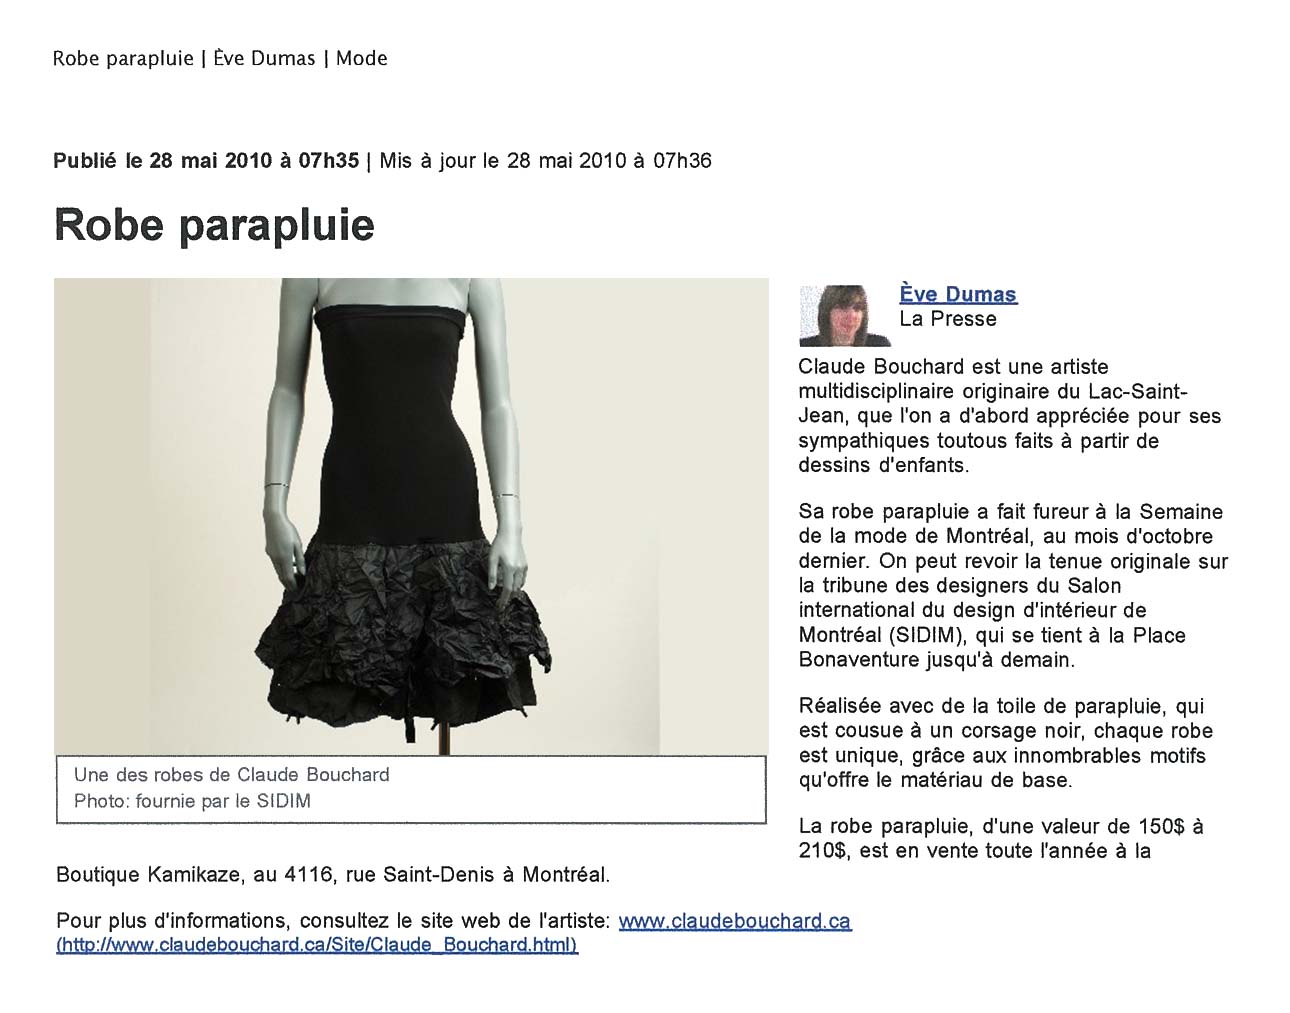 2010 La Presse, Robe parapluie, Ève Dumas